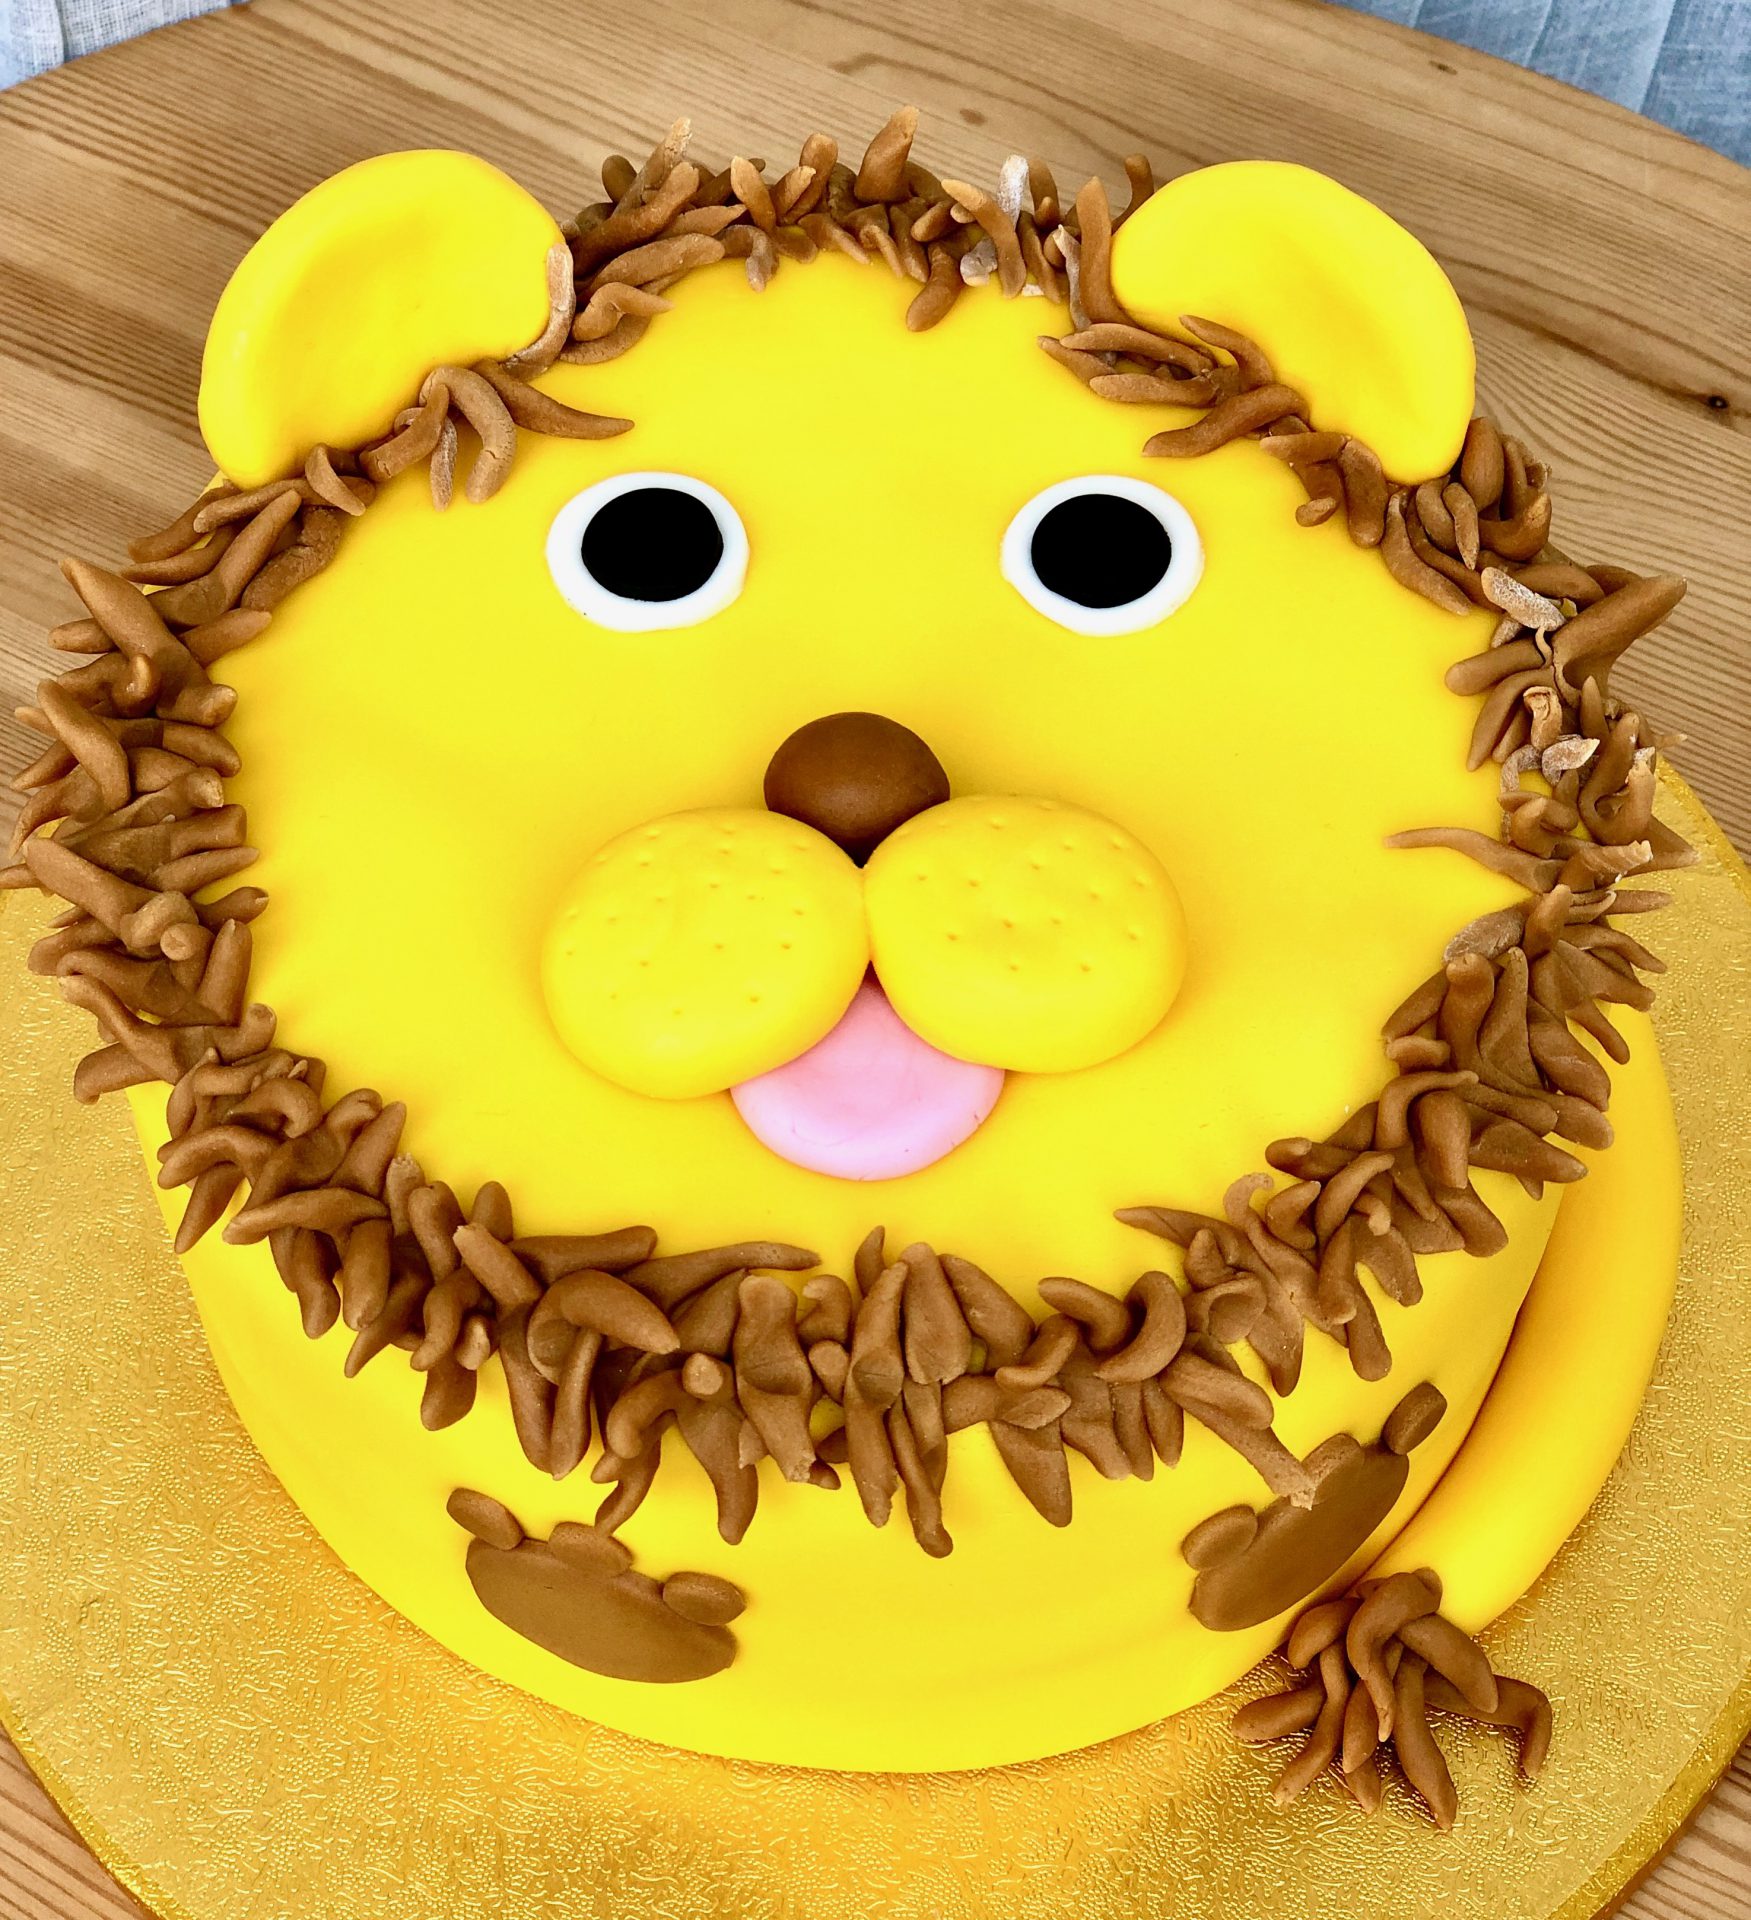 Lion, Monkey and Balloon Cake